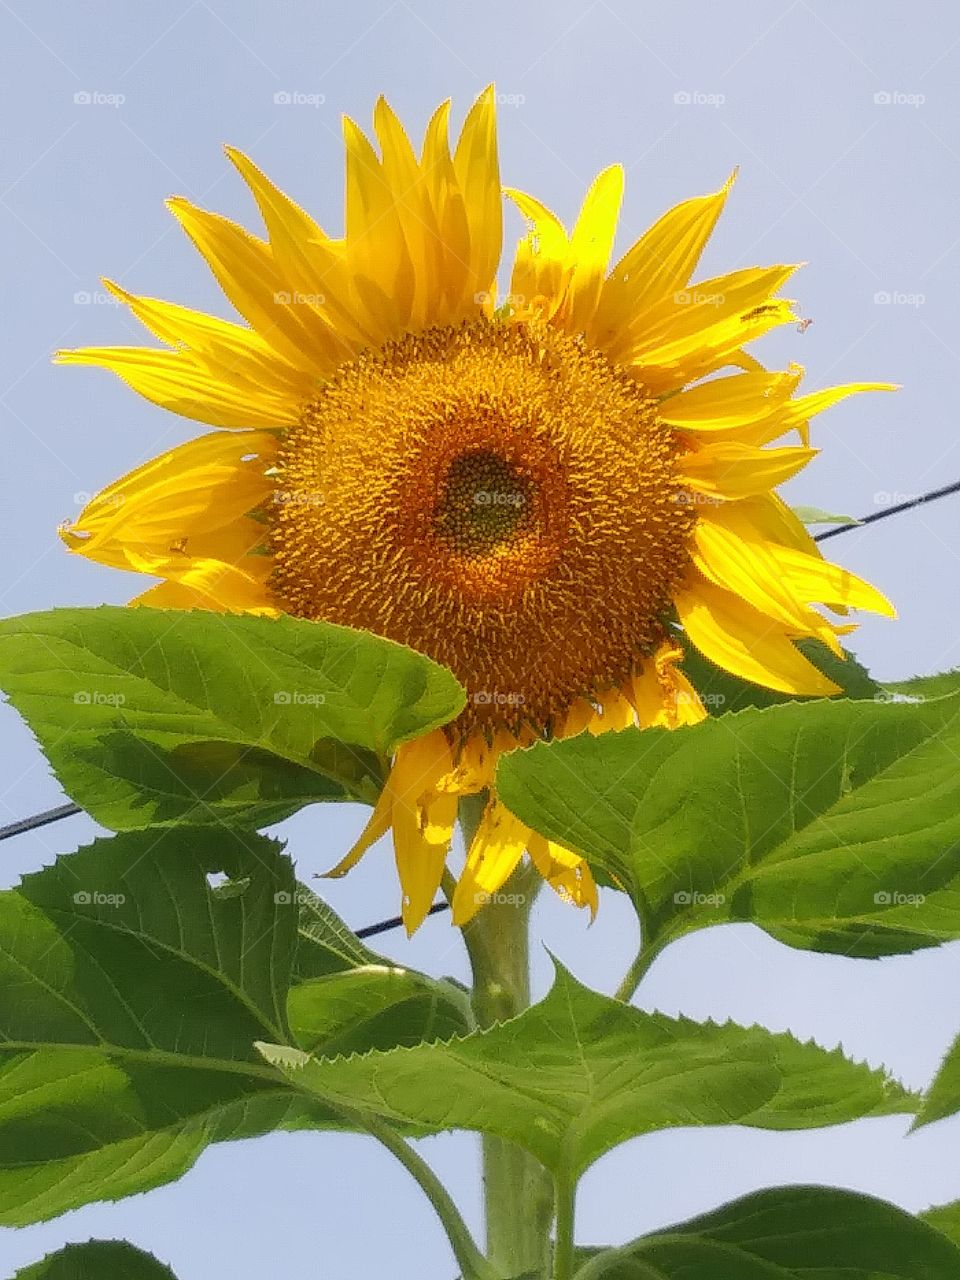 Mammoth Sunflower

I grew this sunflower in my garden here in Nebraska this year (2018).